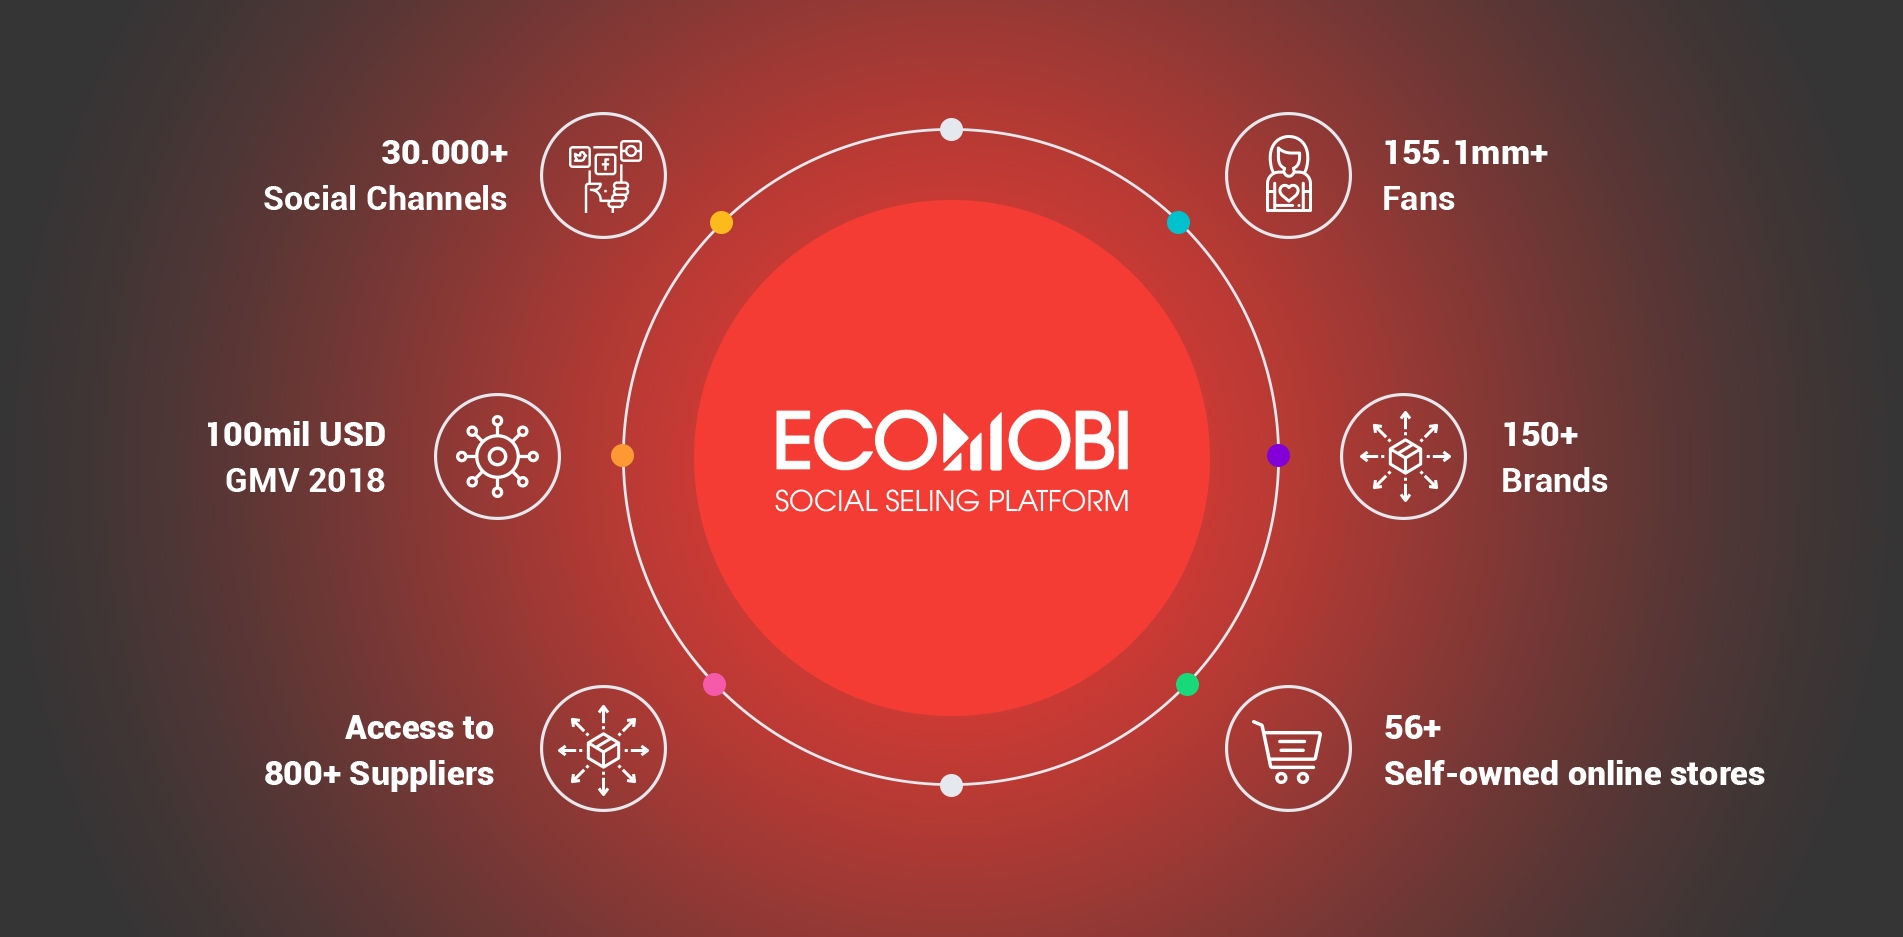 Selain bergabung dengan TikTok Shop, Anda juga dapat meningkatkan penghasilan pasif dengan affiliate marketing di Ecomobi